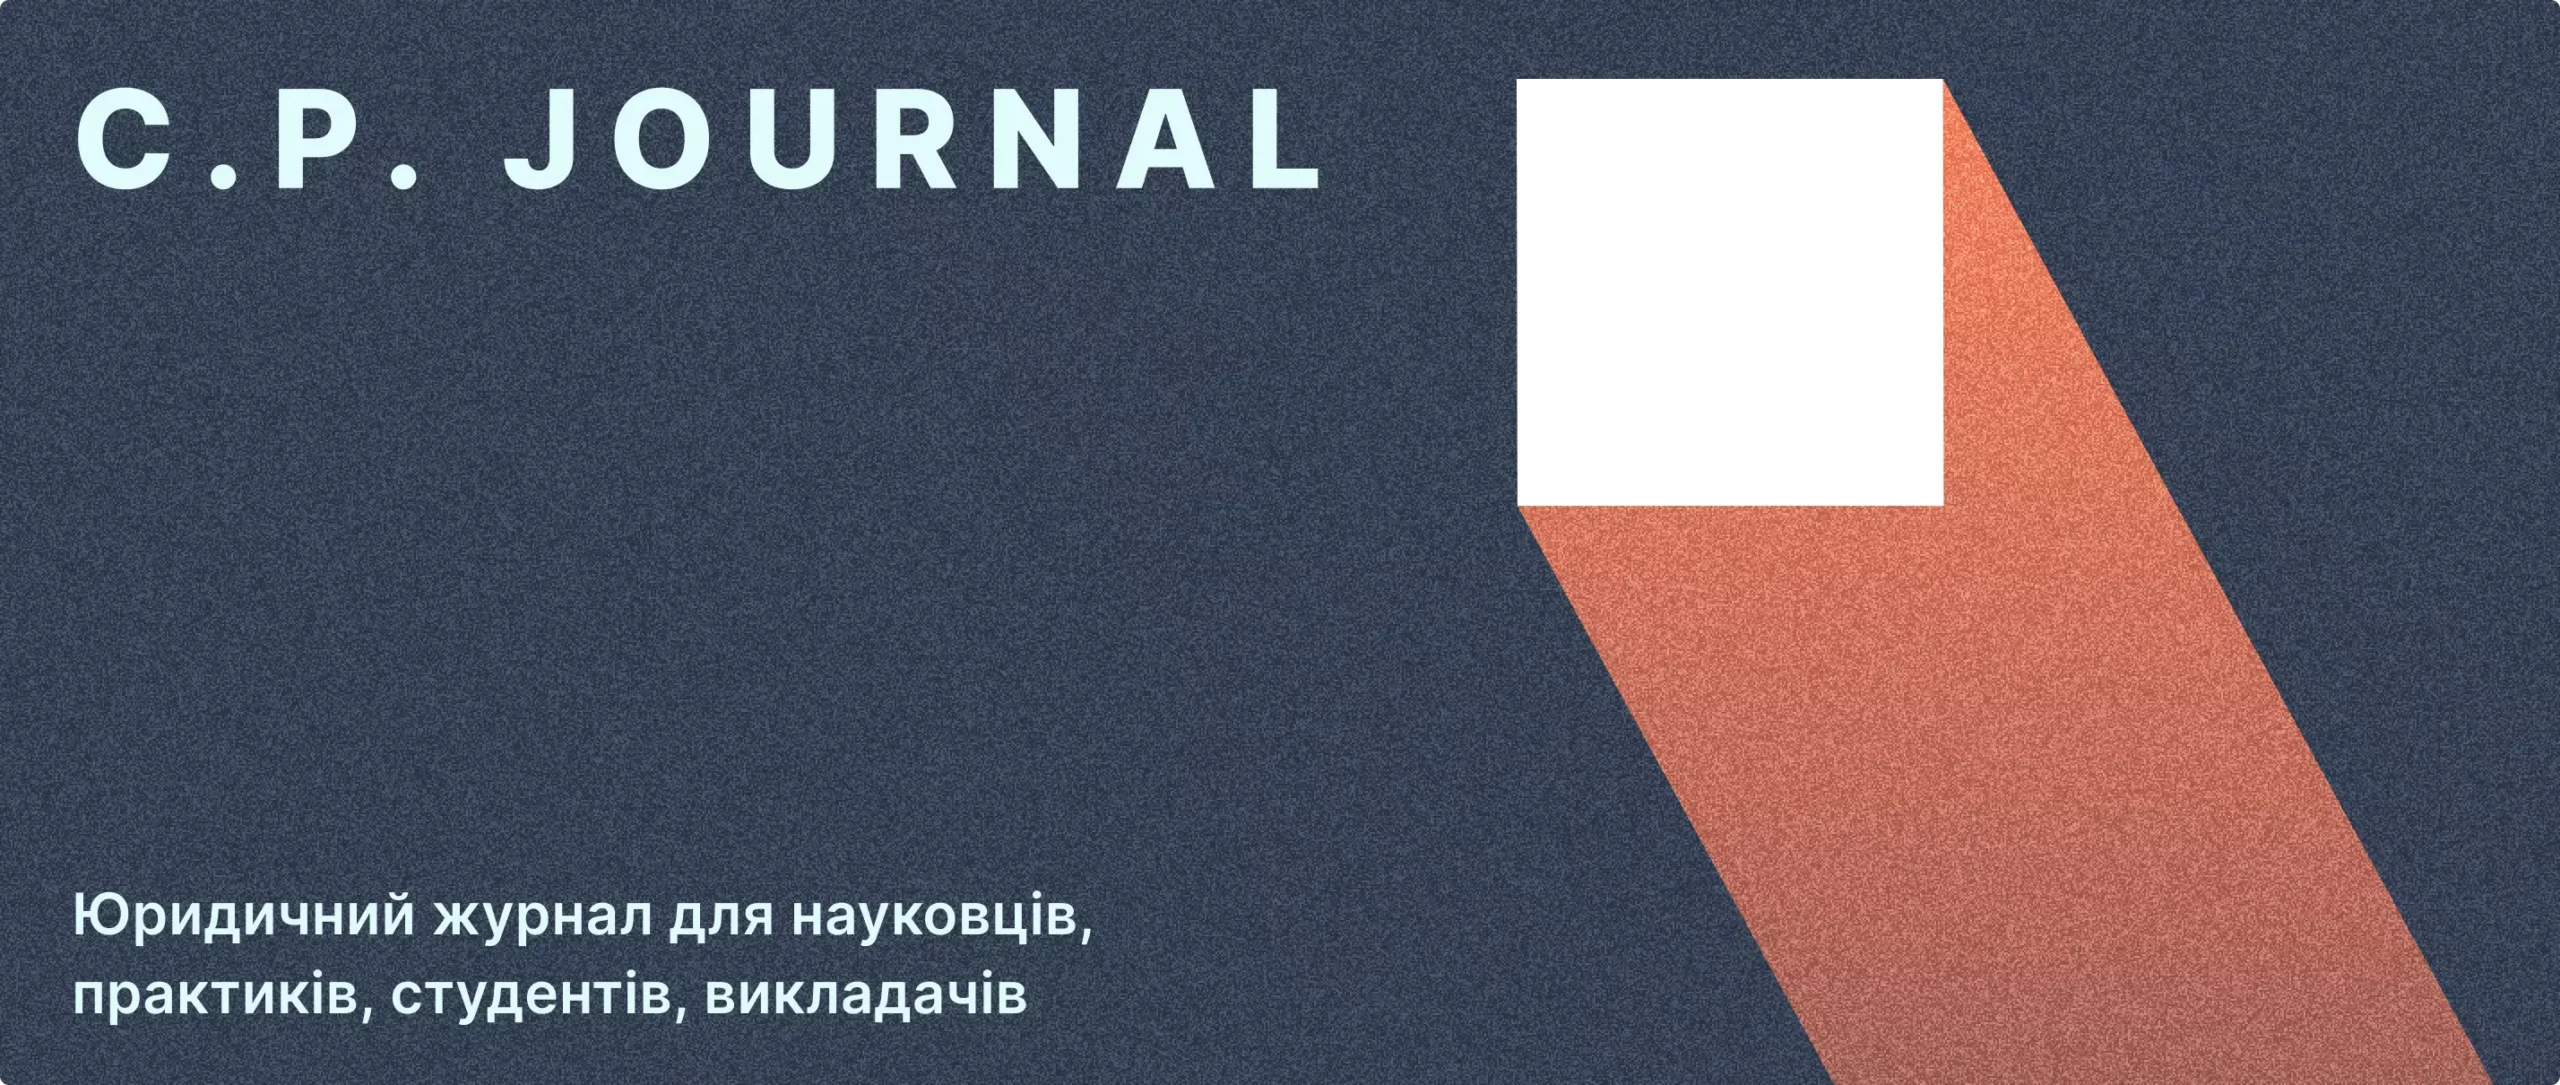 C.P. JOURNAL. Юридичний журнал для науковців, практиків, студентів, викладачів